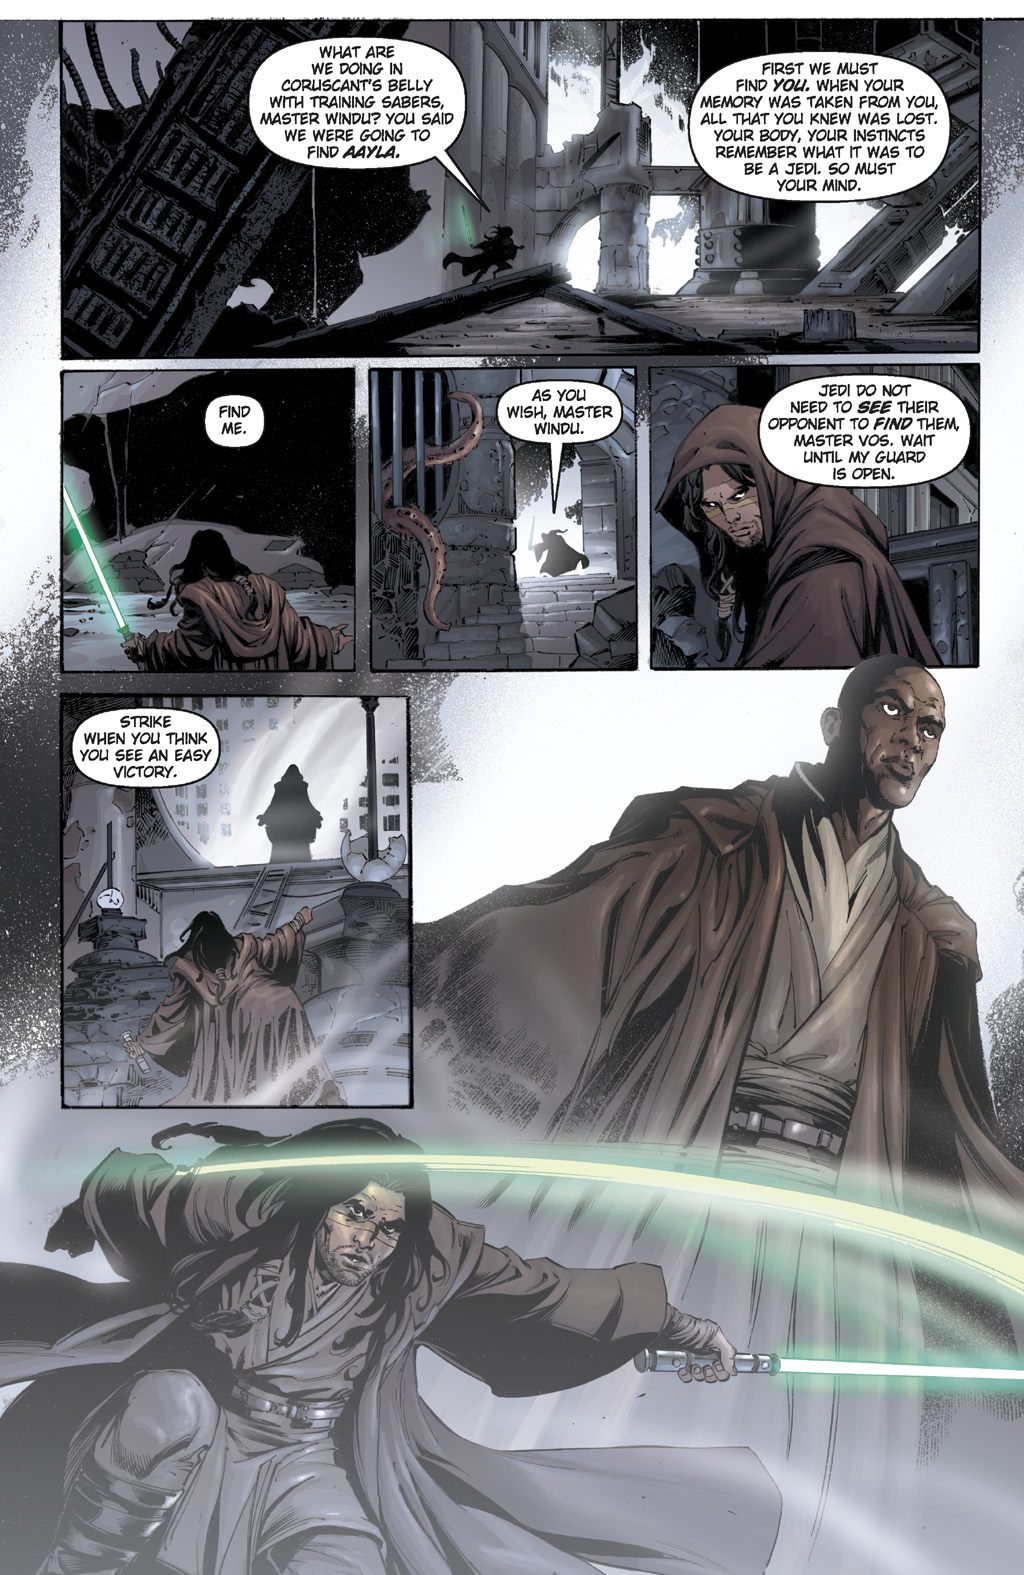 Read online Star Wars: Clone Wars comic -  Issue # TPB 9 - 60